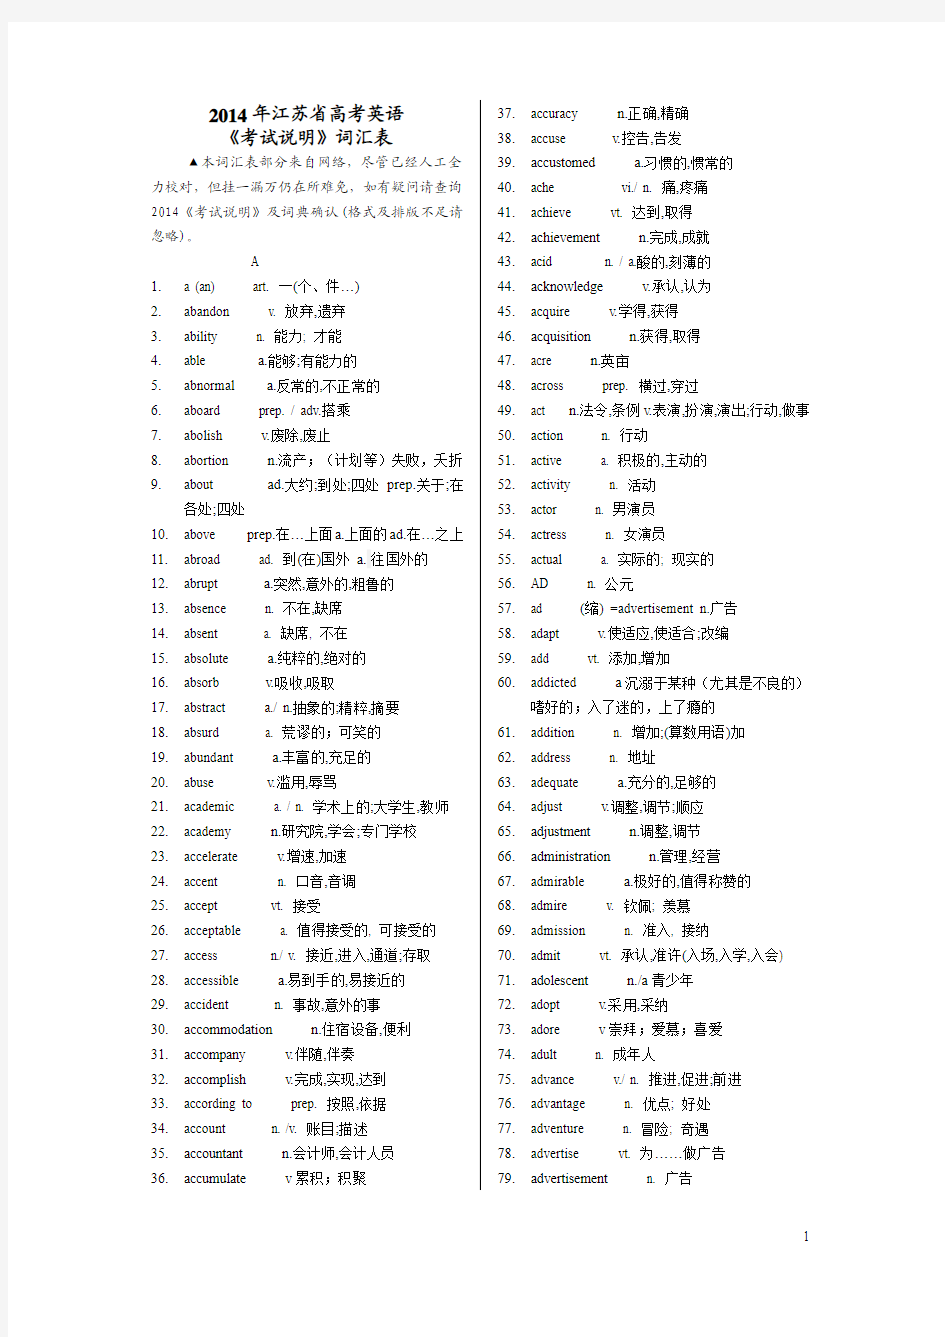 2014江苏省高考英语词汇表(英汉版)